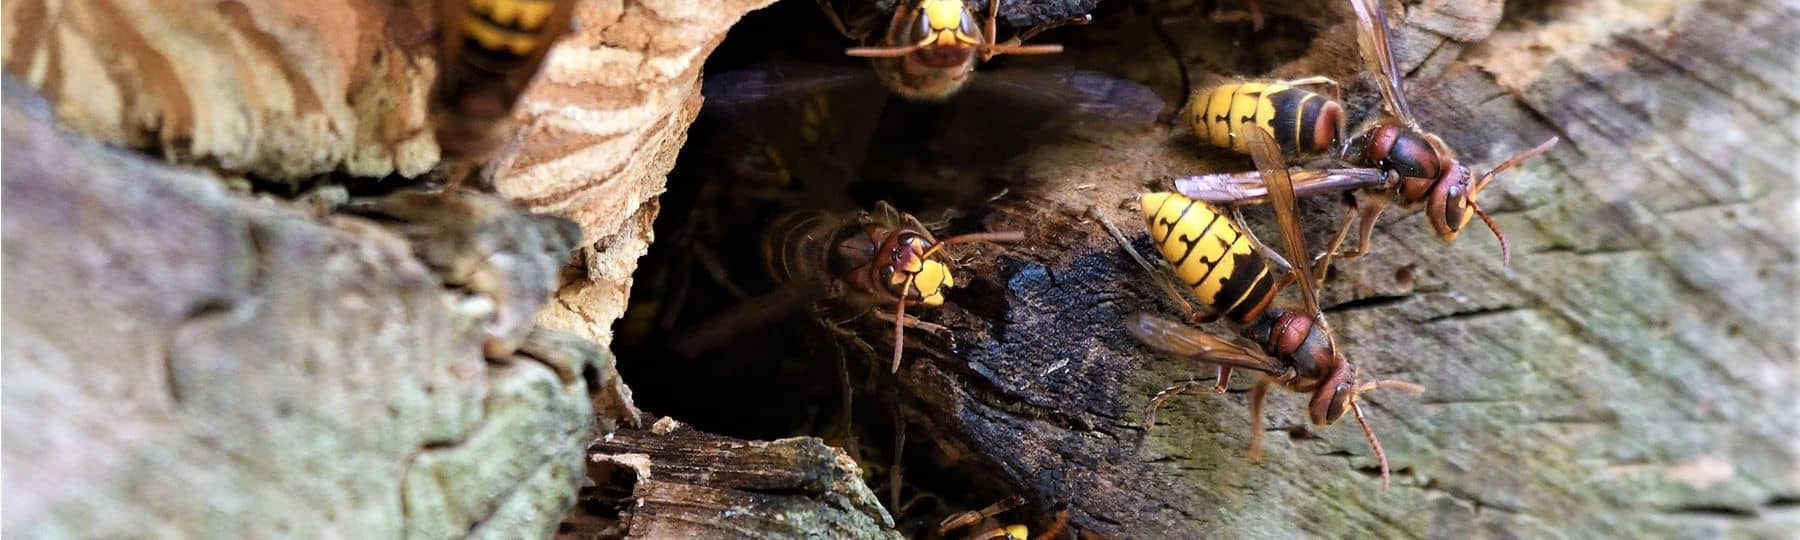 Des frelons d'Europe sortent d'un nid dans une souche d'arbre.